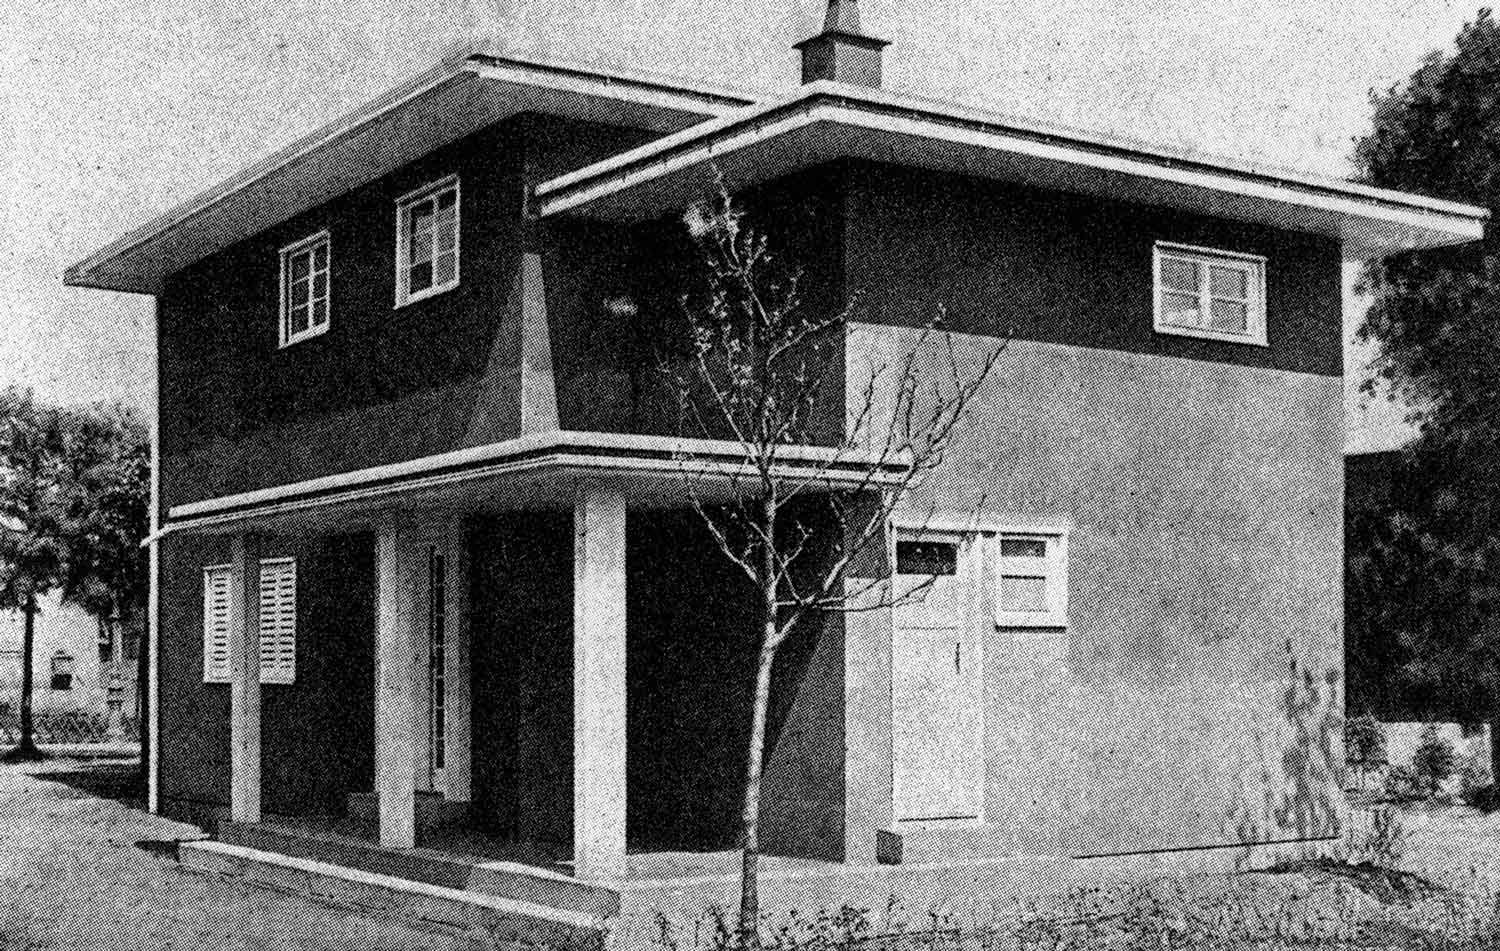 Foto, schwarz-weiß: Ein zweigeschossiger Bungalow mit Flachdach und Veranda